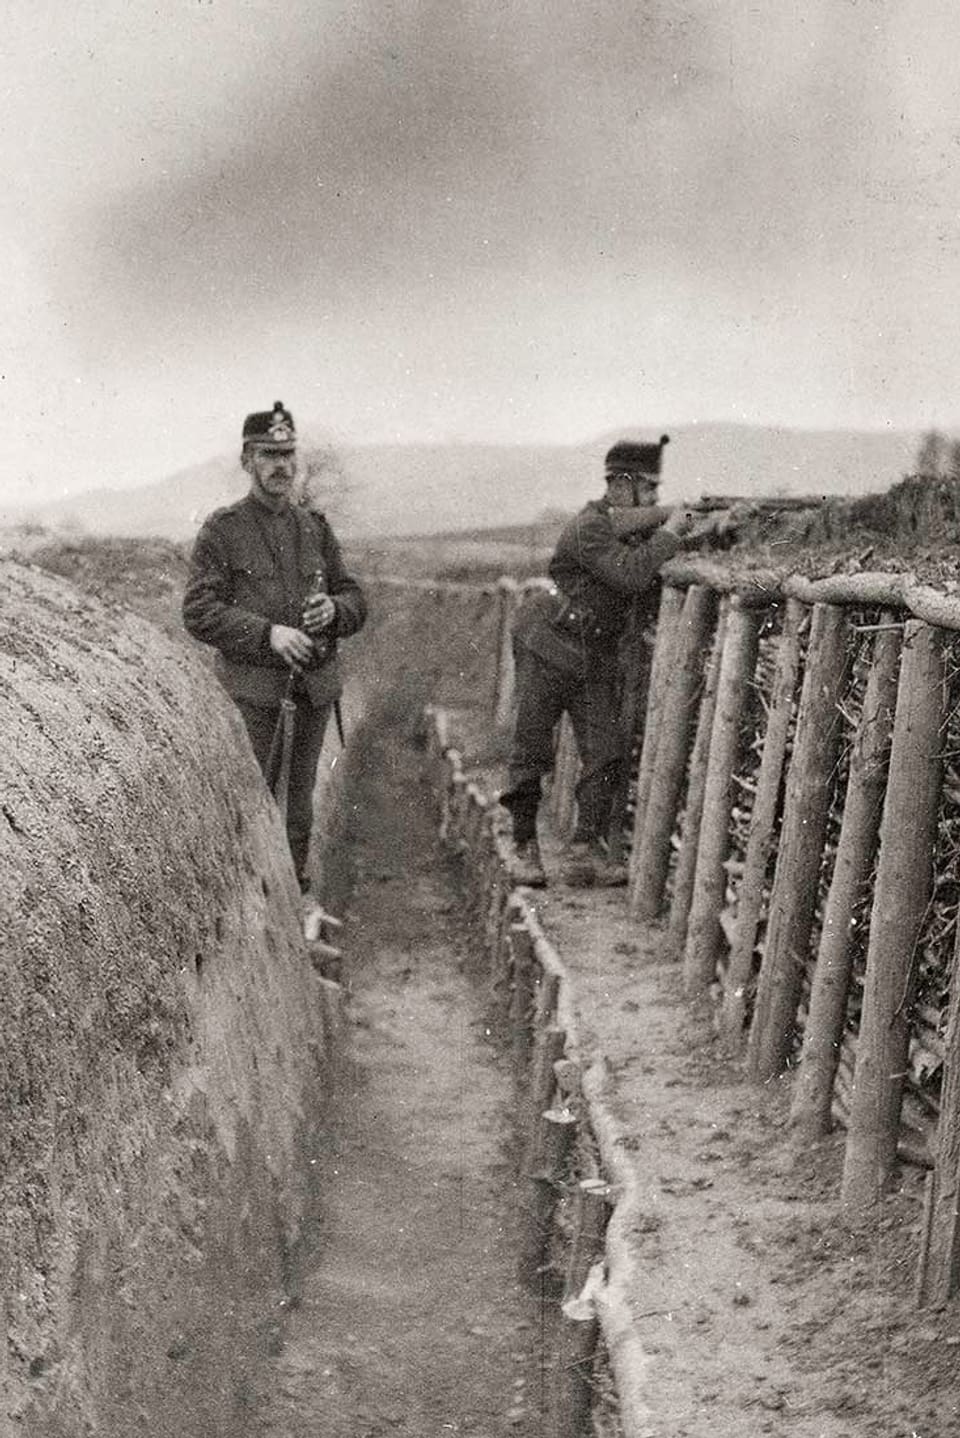 Zwei Soldaten stehen in einem Infanteriegraben. Einer zielt mit einer Waffe.